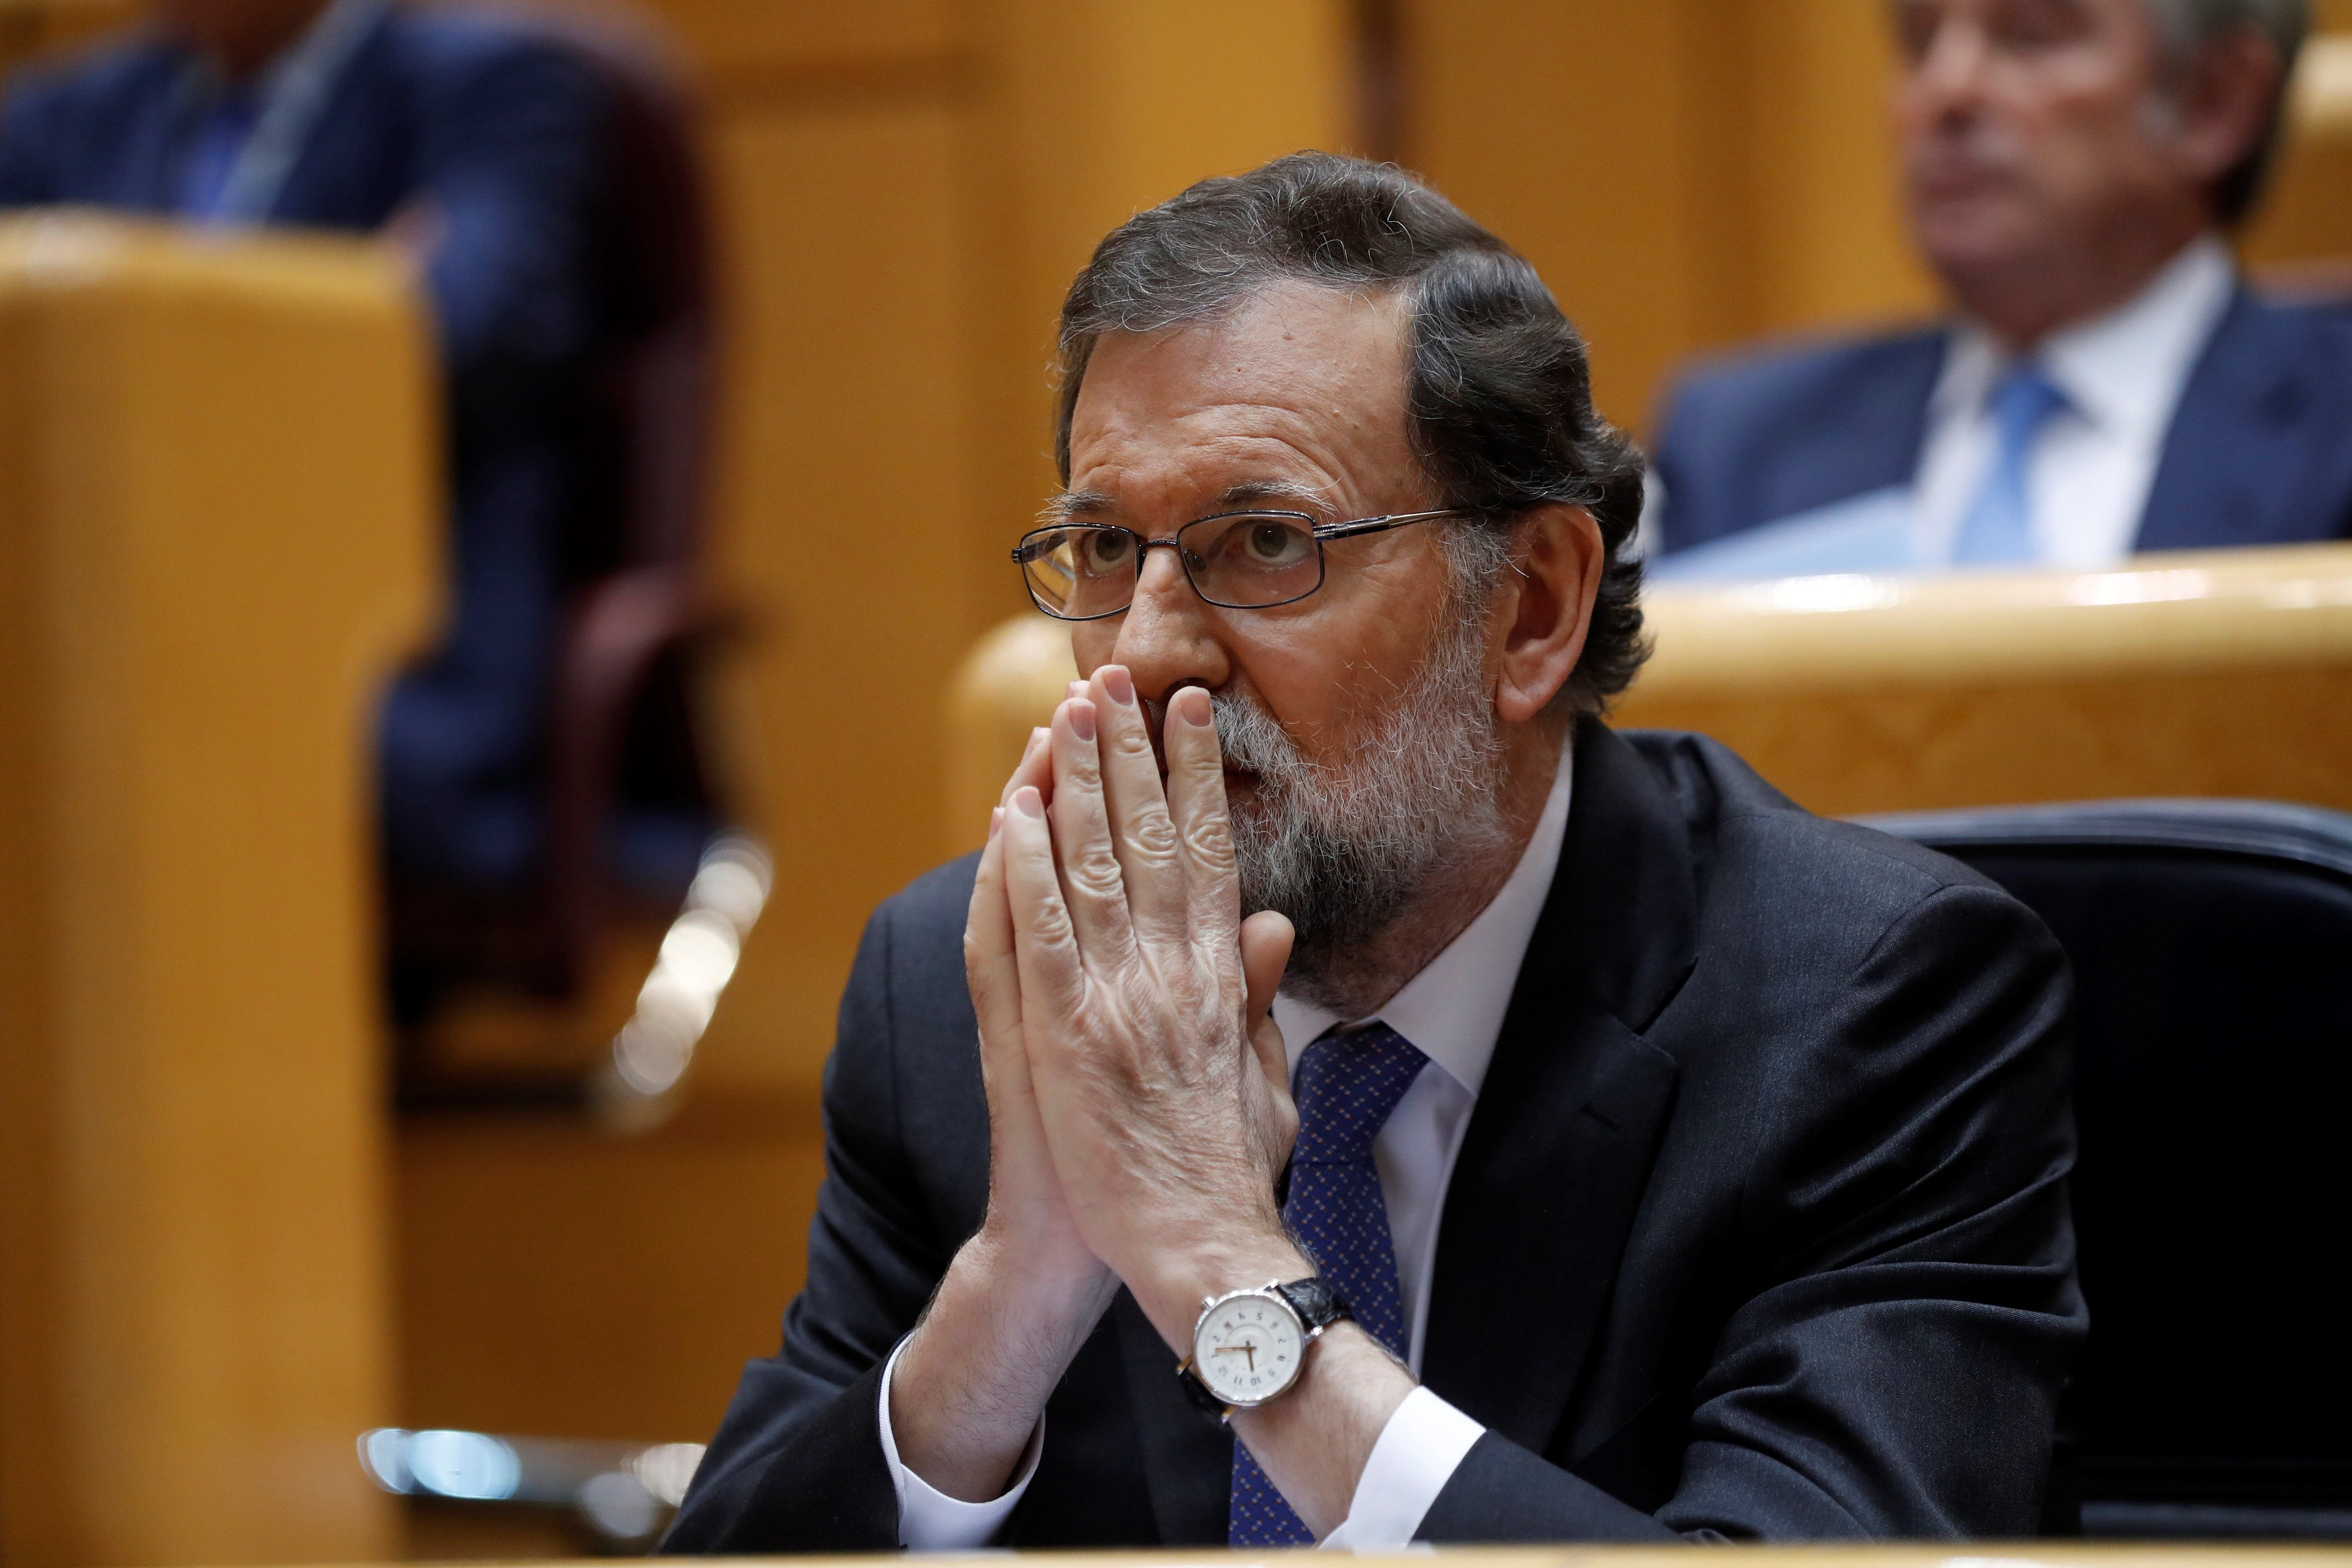 ¿Crees que Rajoy ha provocado unas "elecciones anormales" como dice The New York Times?